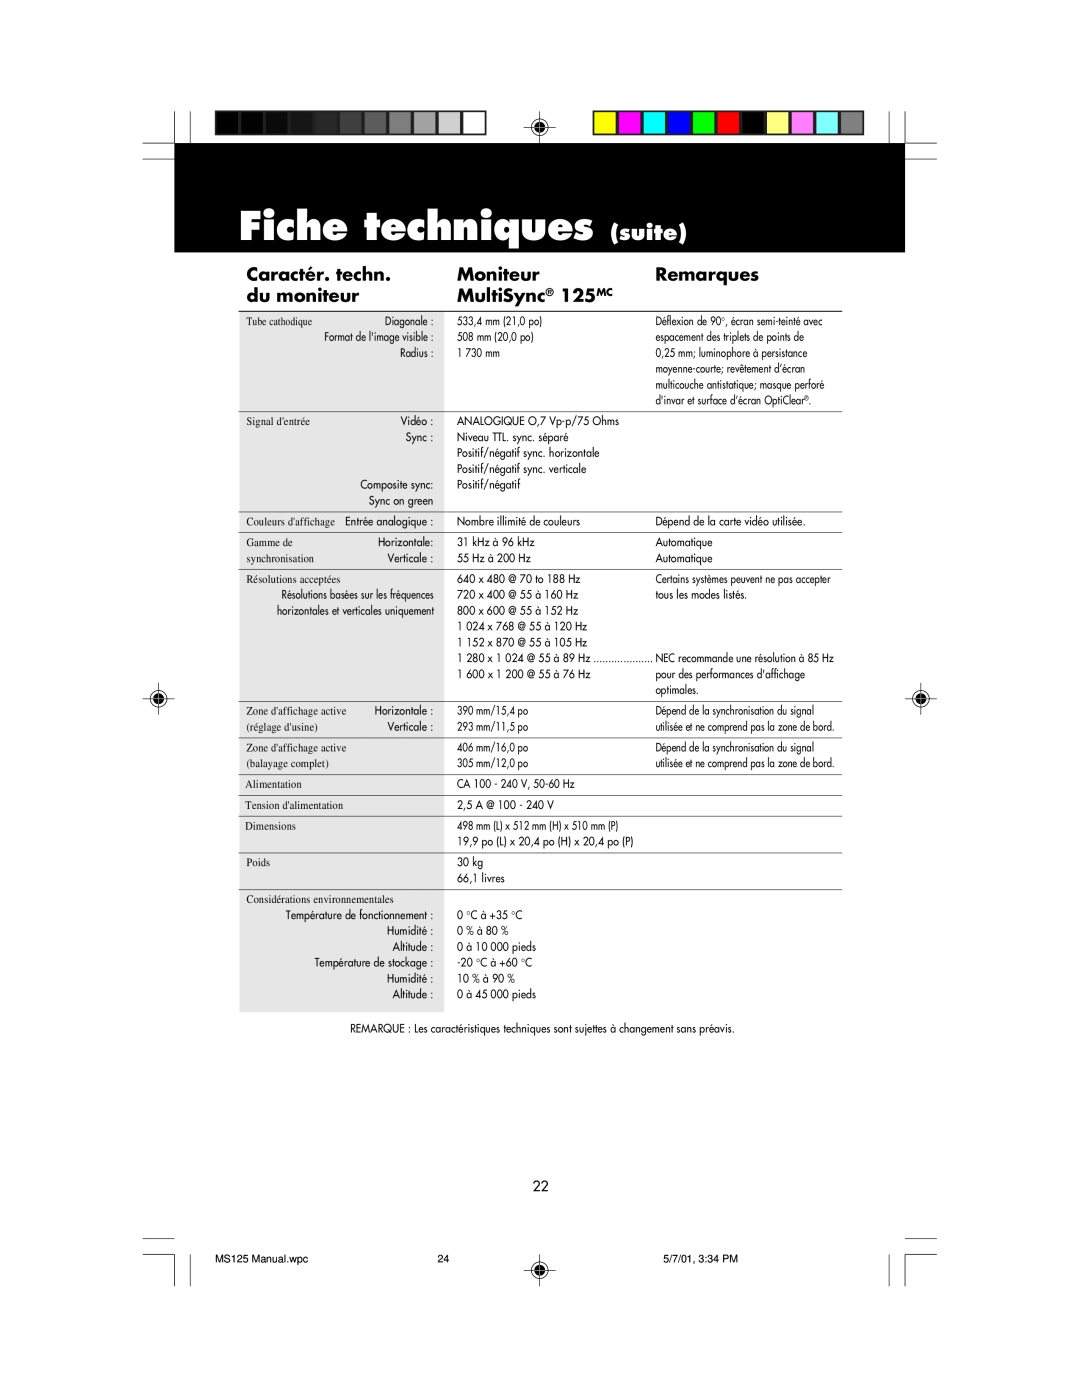 NEC MS125 manual Fiche techniques suite, Caractér. techn, Moniteur, Remarques, du moniteur, MultiSync 125MC 